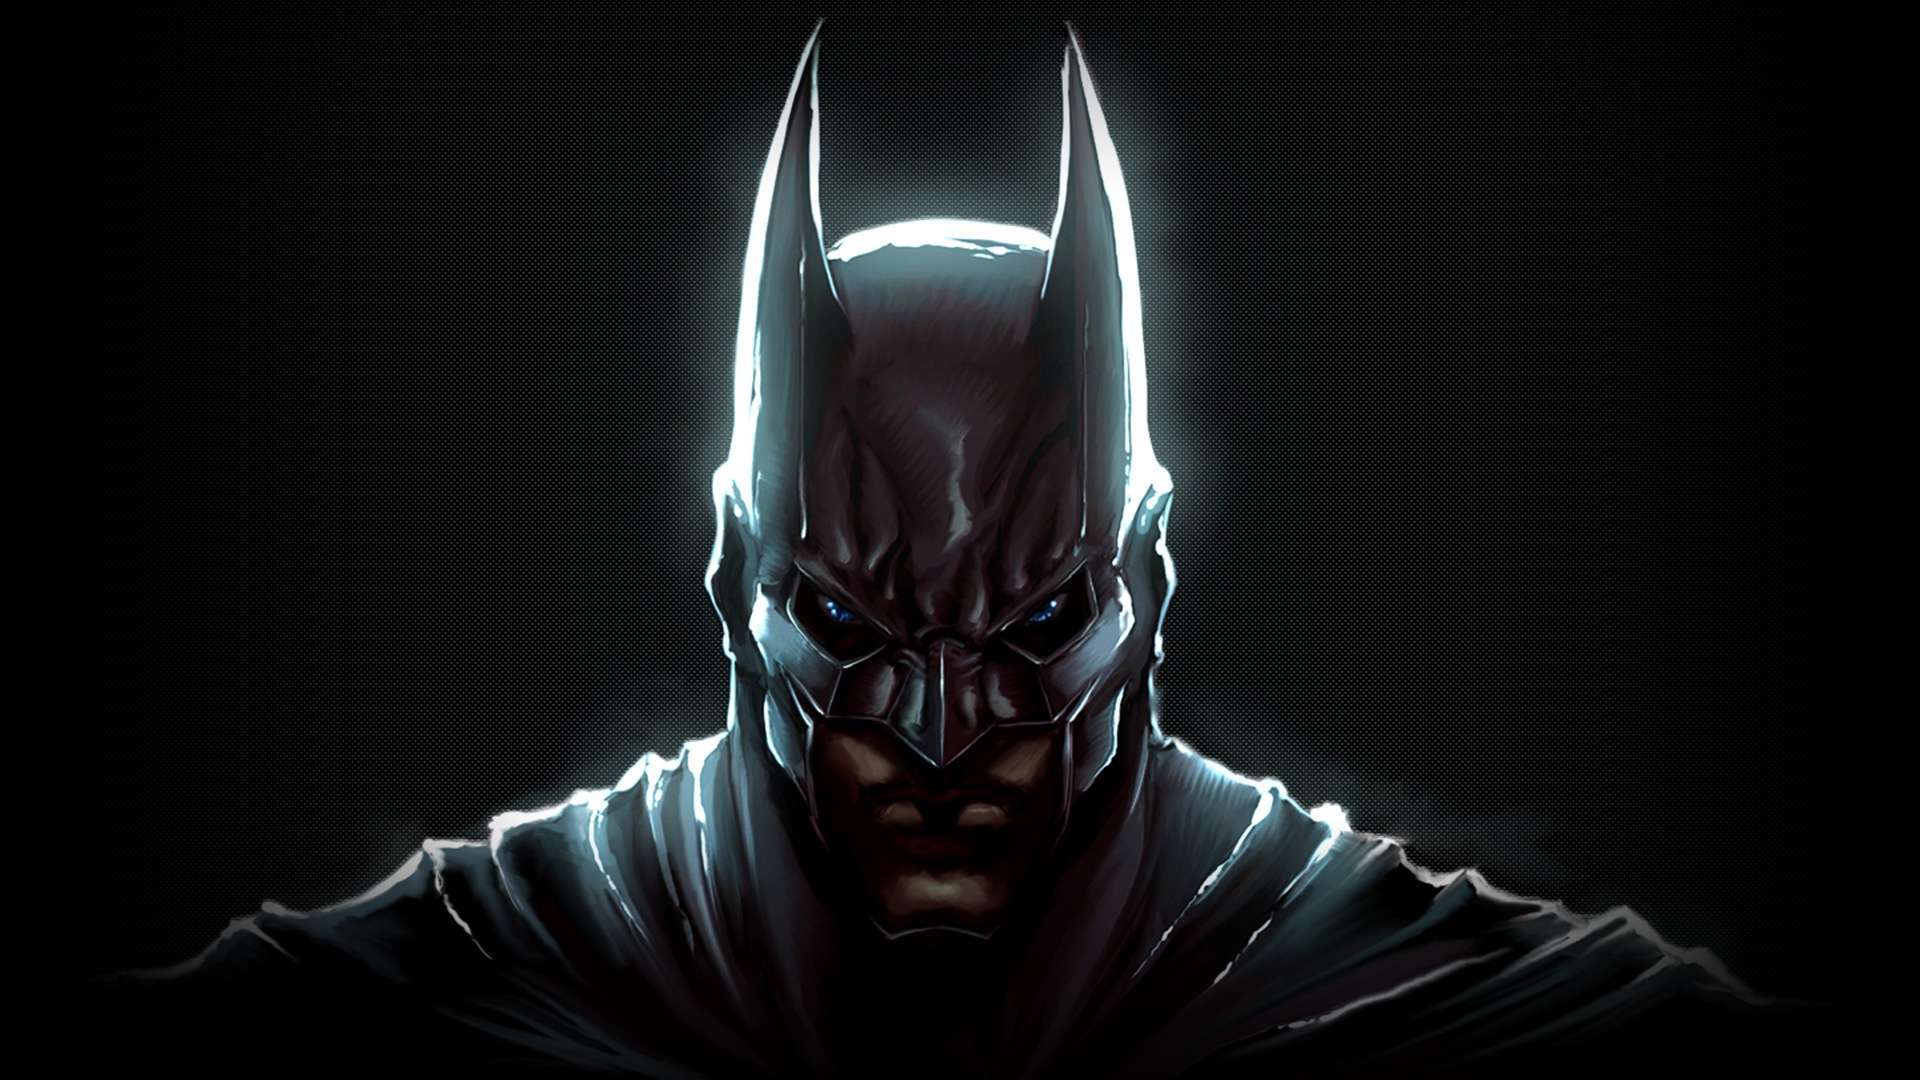 Wallpaper Dark Knight Batman HD 1080p Upload At March